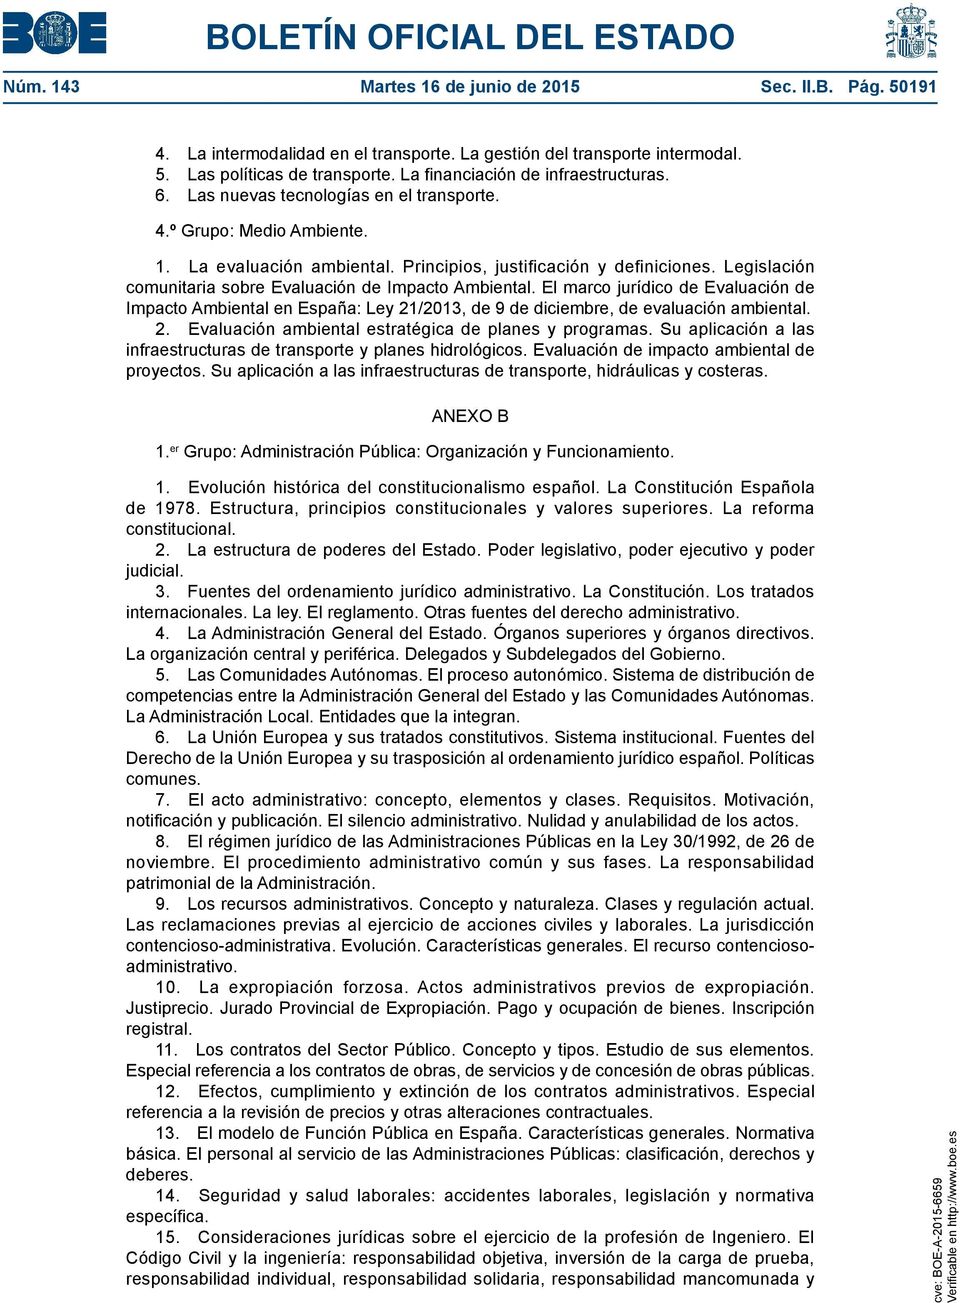 Legislación comunitaria sobre Evaluación de Impacto Ambiental. El marco jurídico de Evaluación de Impacto Ambiental en España: Ley 21/2013, de 9 de diciembre, de evaluación ambiental. 2. Evaluación ambiental estratégica de planes y programas.